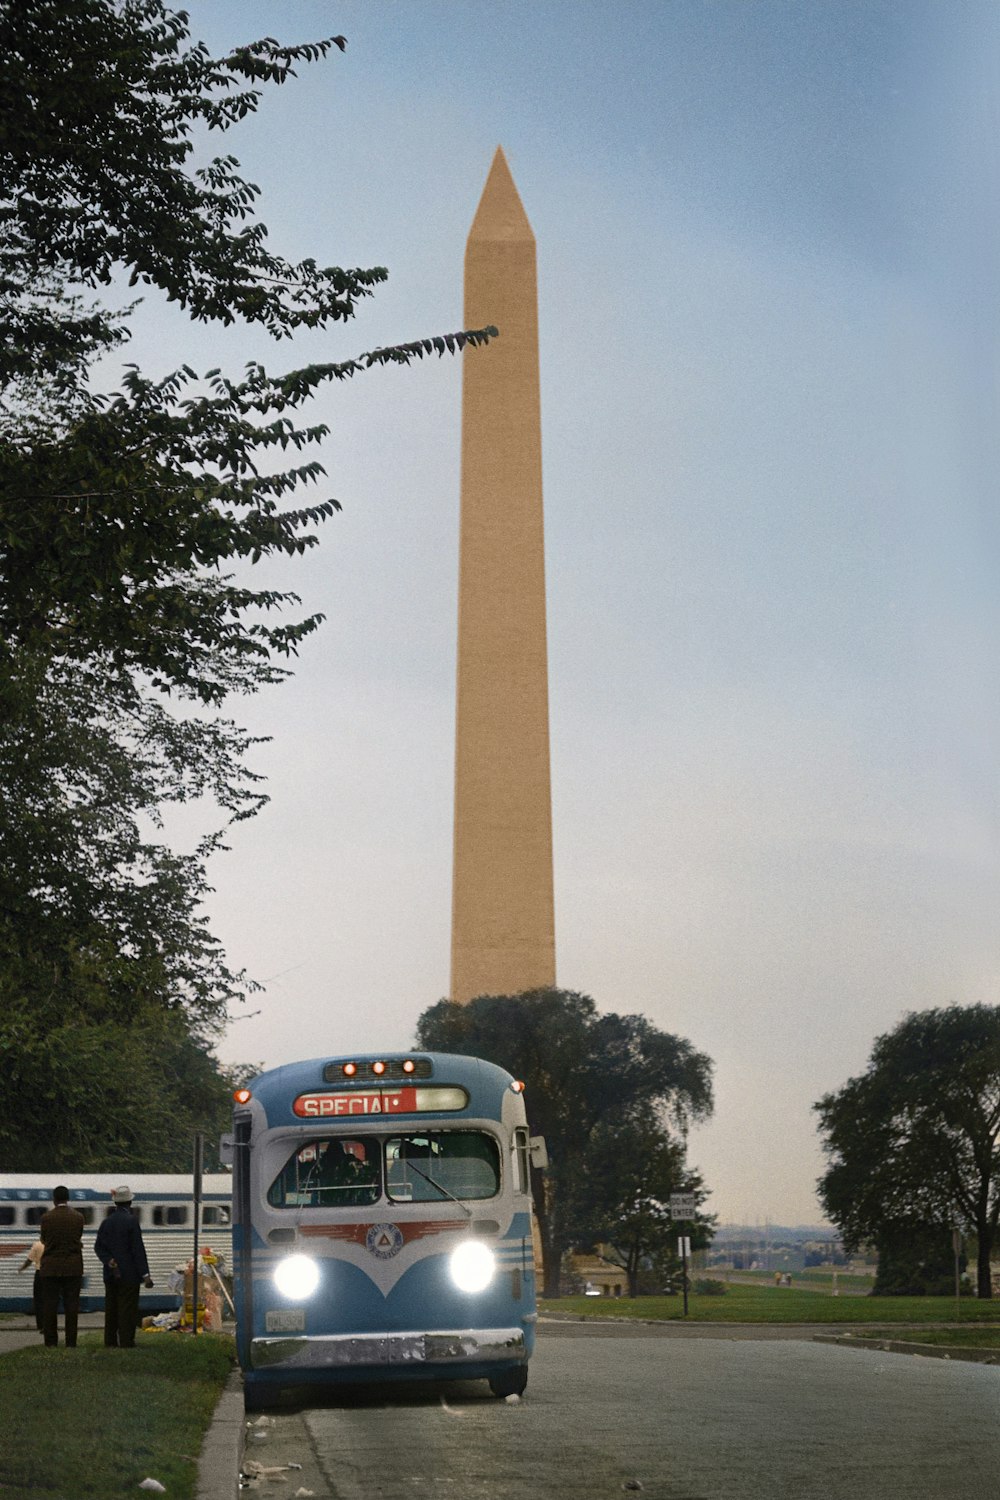 Autobus in partenza davanti al Washington Monument dopo la Marcia per i Diritti Civili su Washington, D.C.